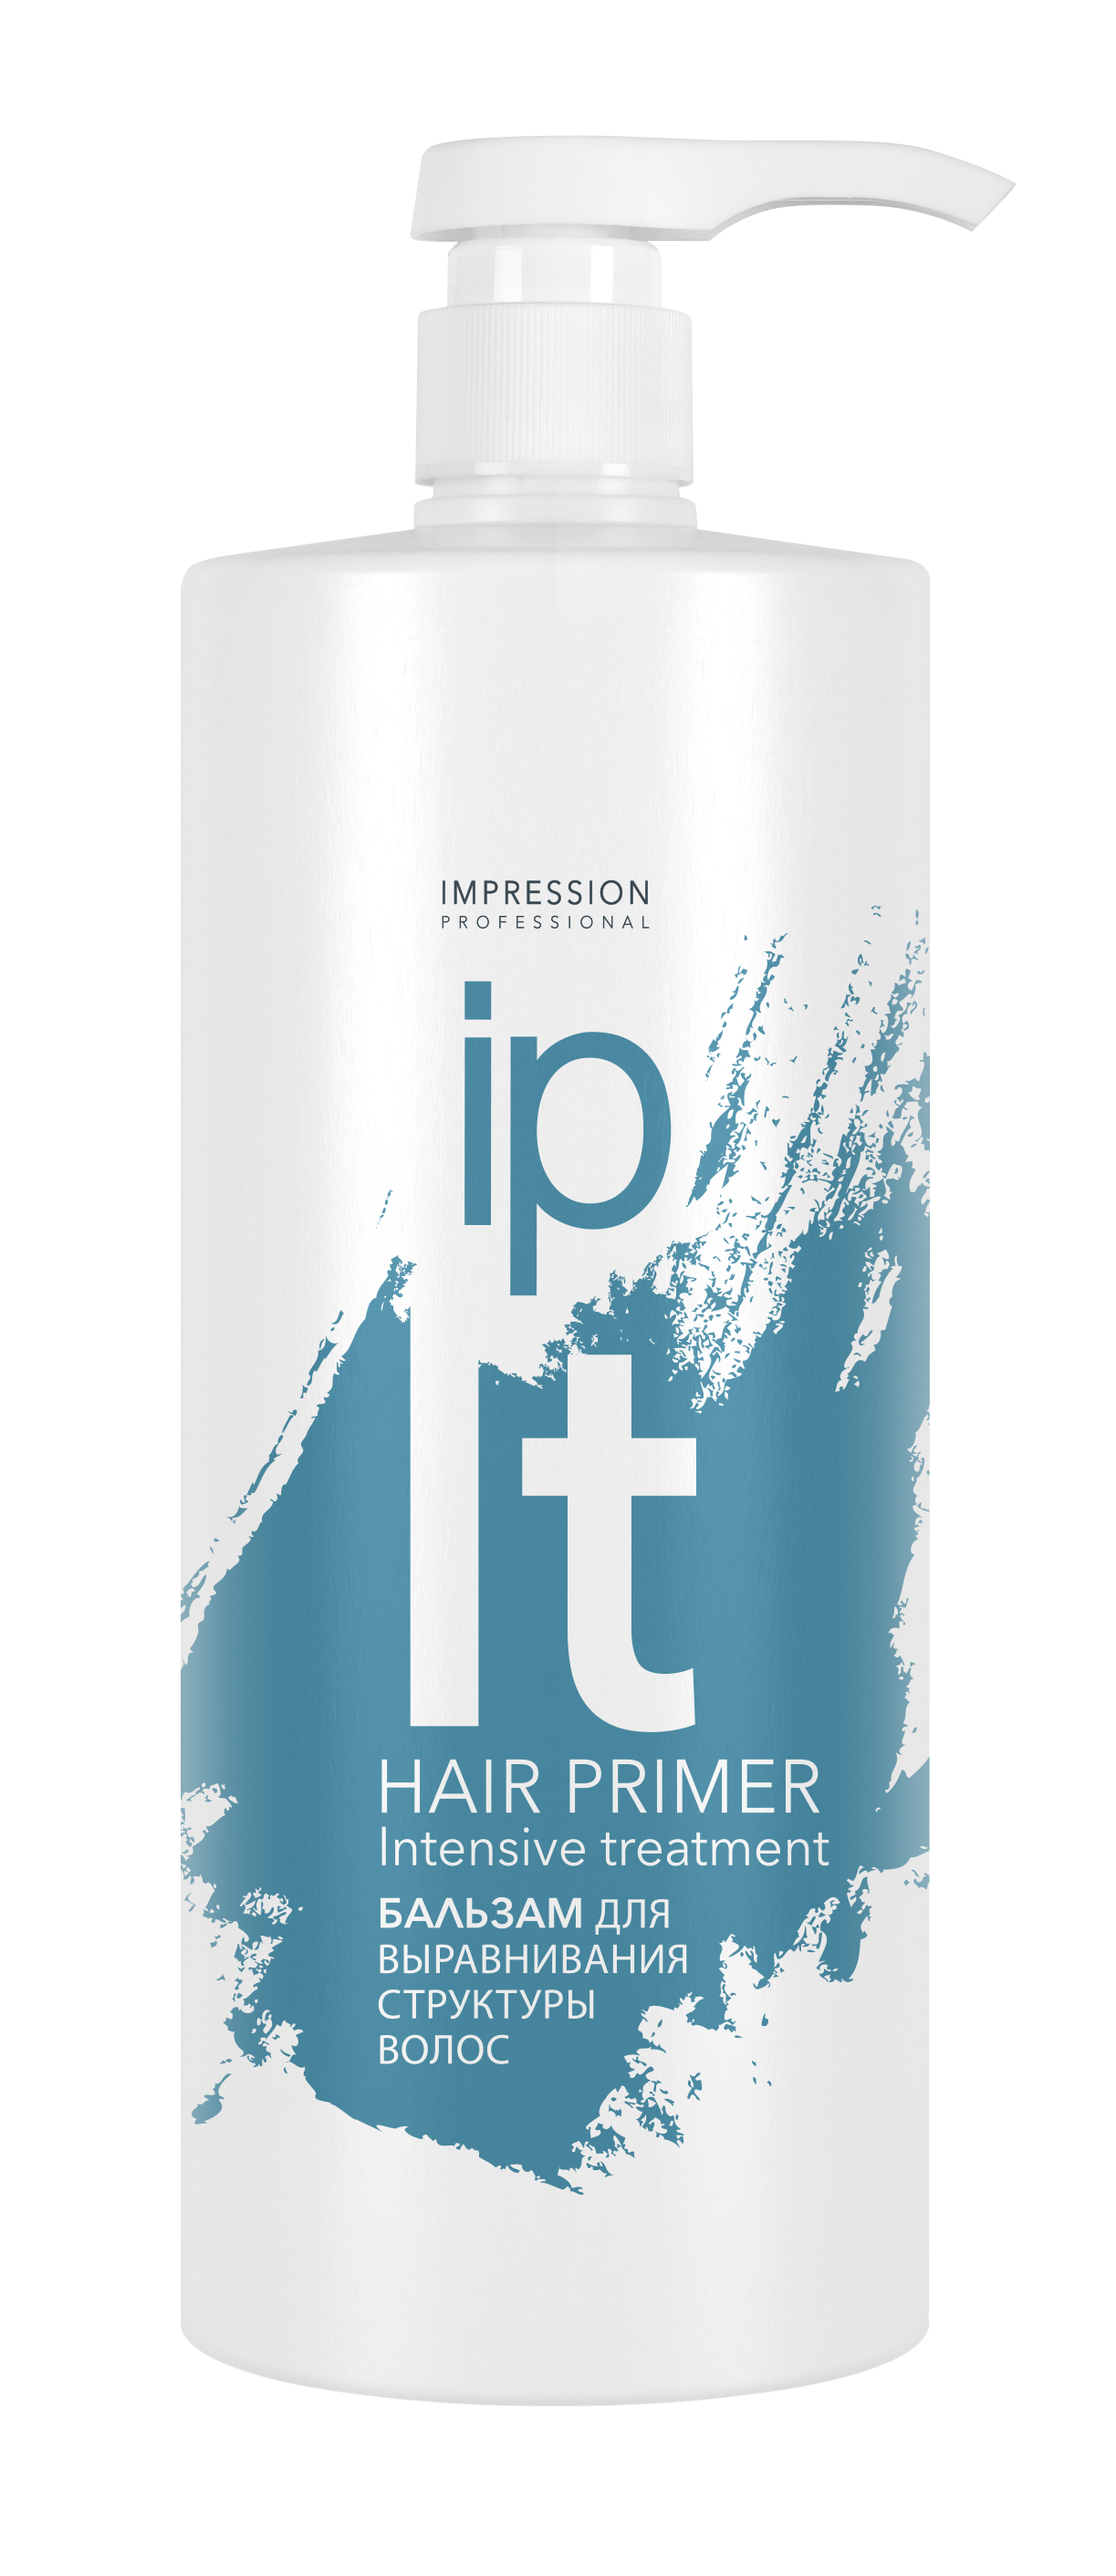 Бальзам для волос Impression Professional Hair Primer для выравнивания структуры волос 1000мл - в интернет-магазине tut-beauty.by